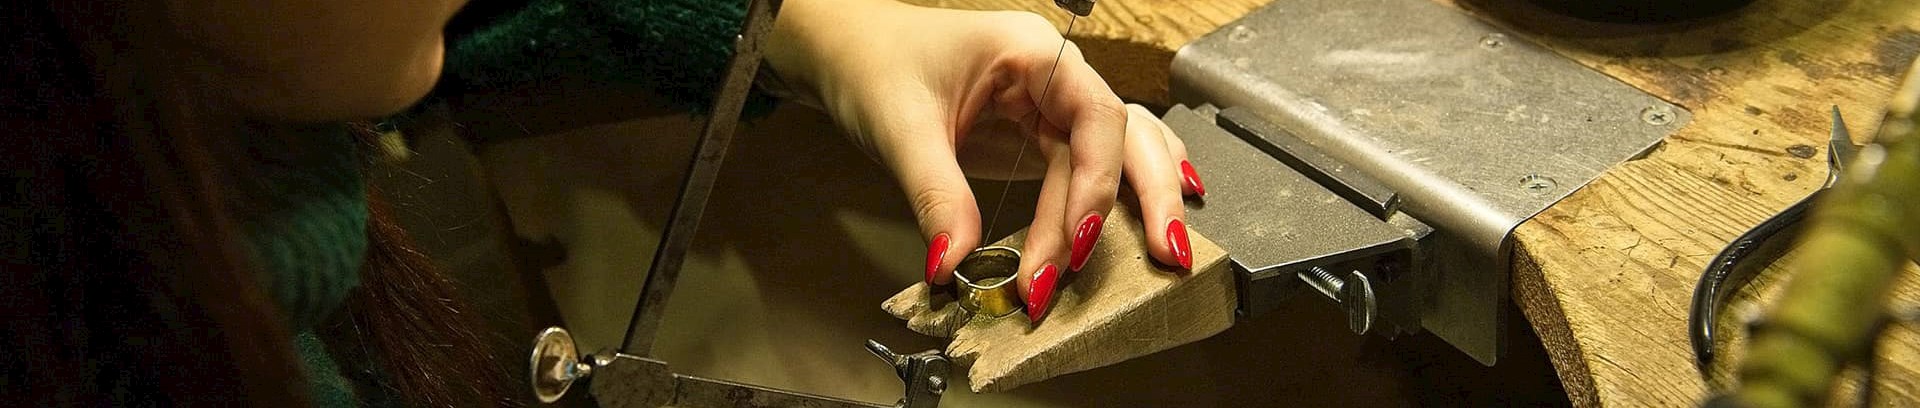 Sådan laver du egne smykker | FOF